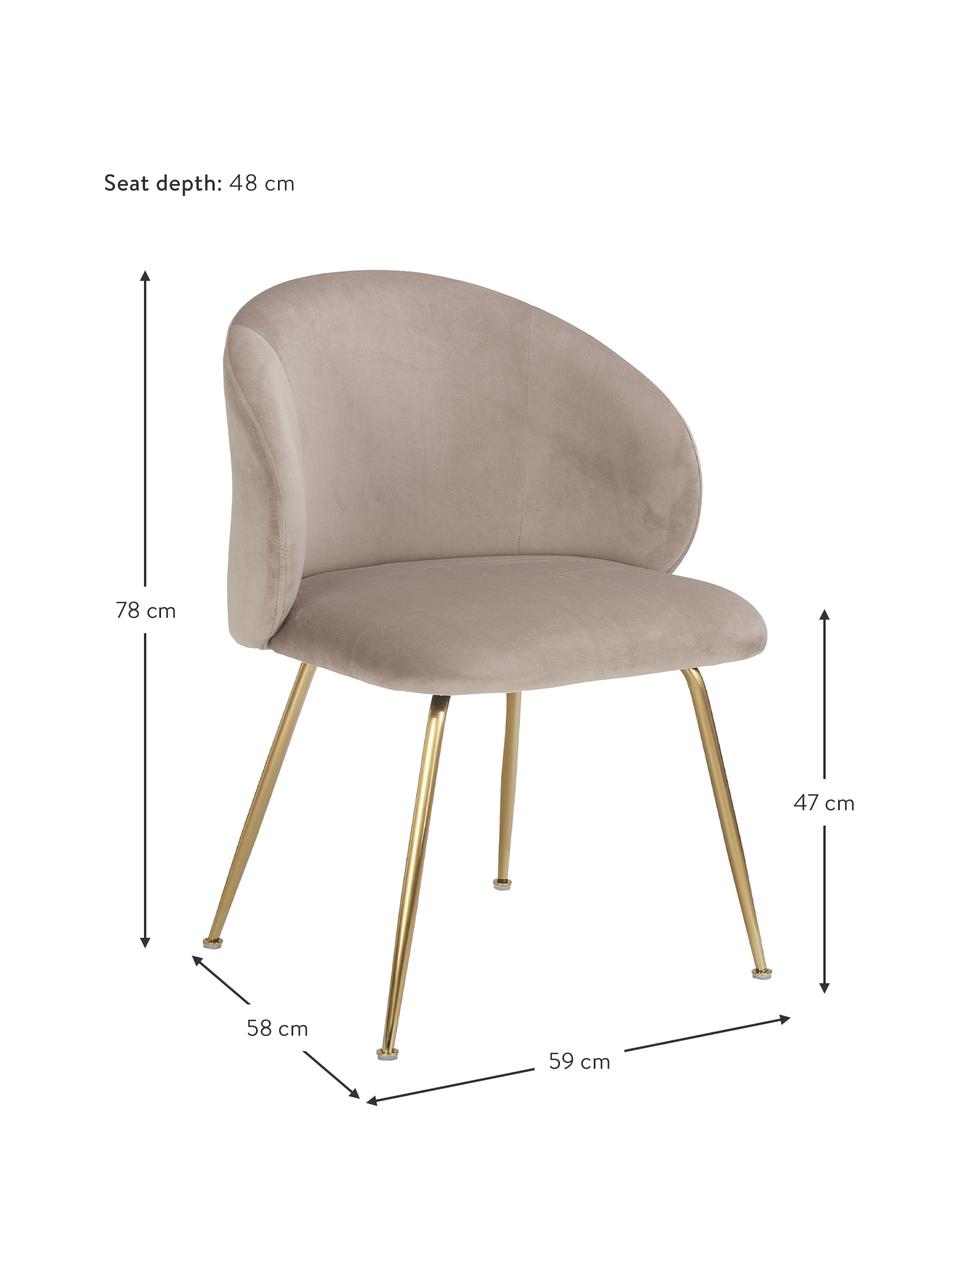 Fluwelen stoelen Luisa in taupe, 2 stuks, Bekleding: fluweel (100% polyester), Poten: gepoedercoat metaal, Fluweel taupe, goudkleurig, B 59 x D 58 cm